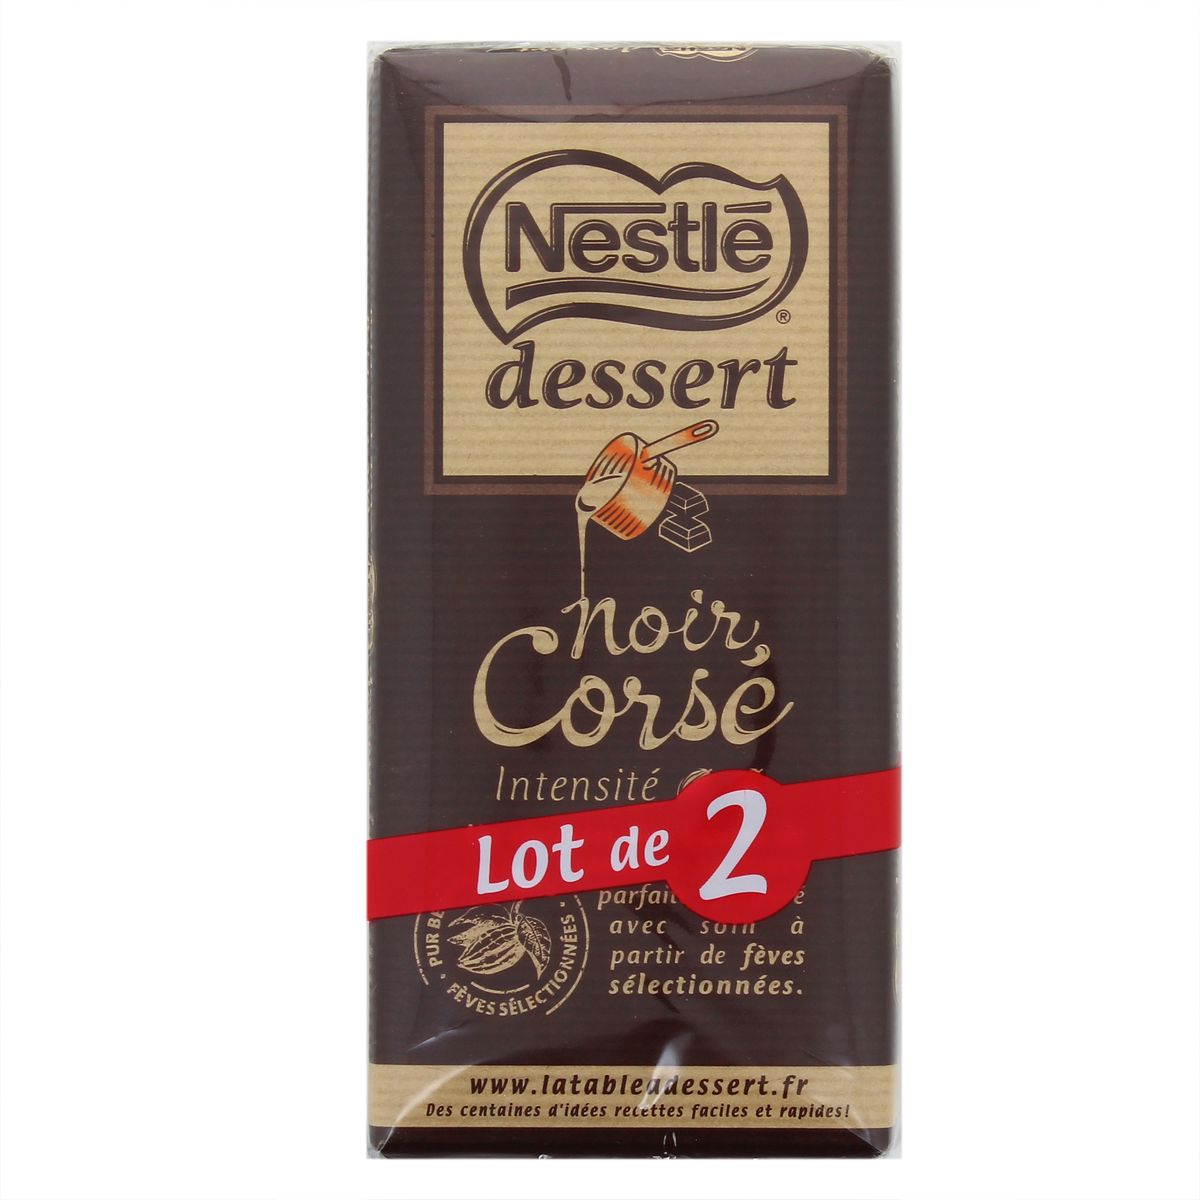 Achat / Vente Nestlé Dessert Chocolat pâtissier noir corsé, 2x200g